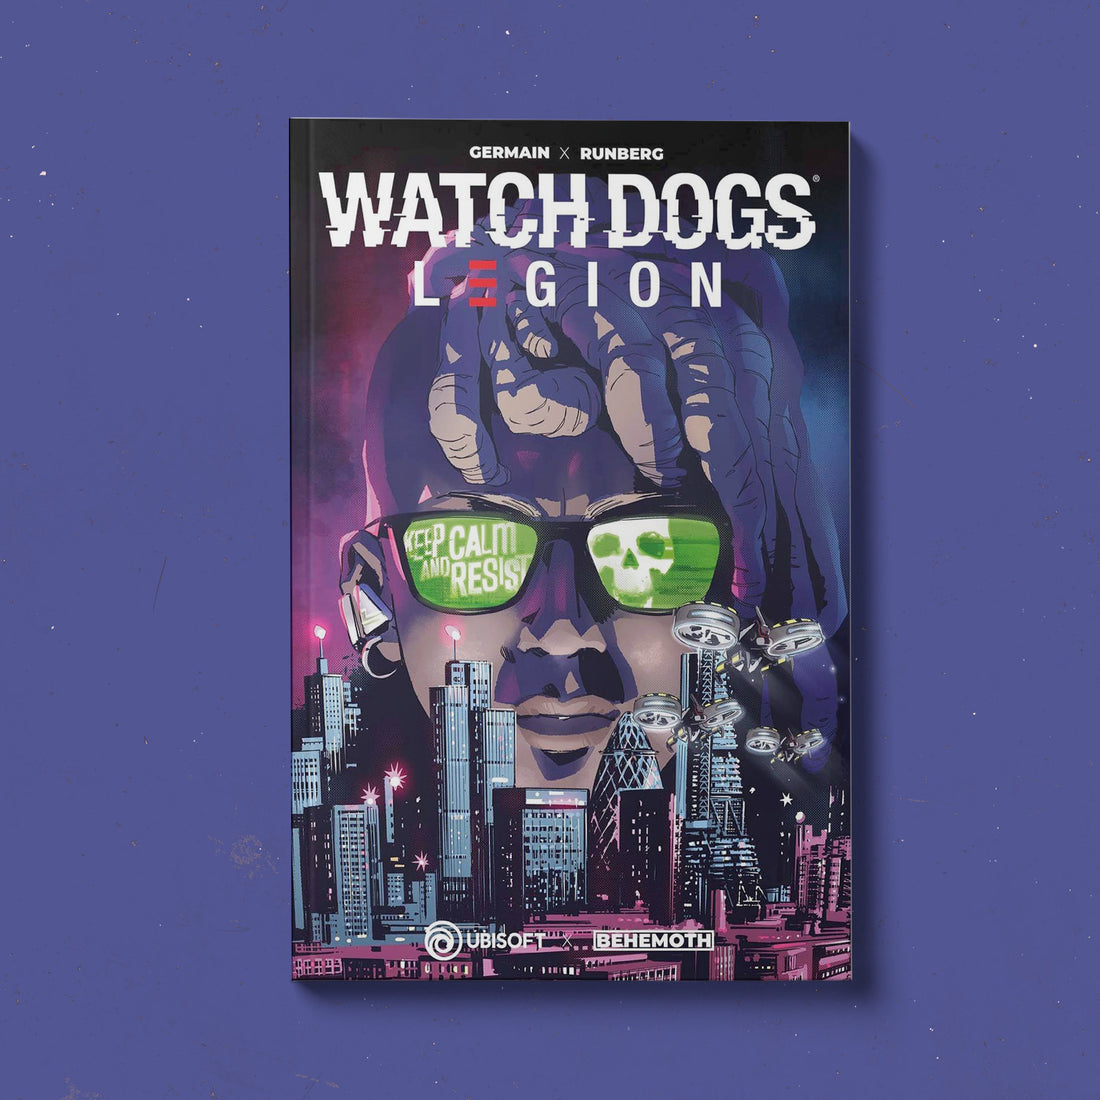 Watch Dogs: Legion Vol. 1